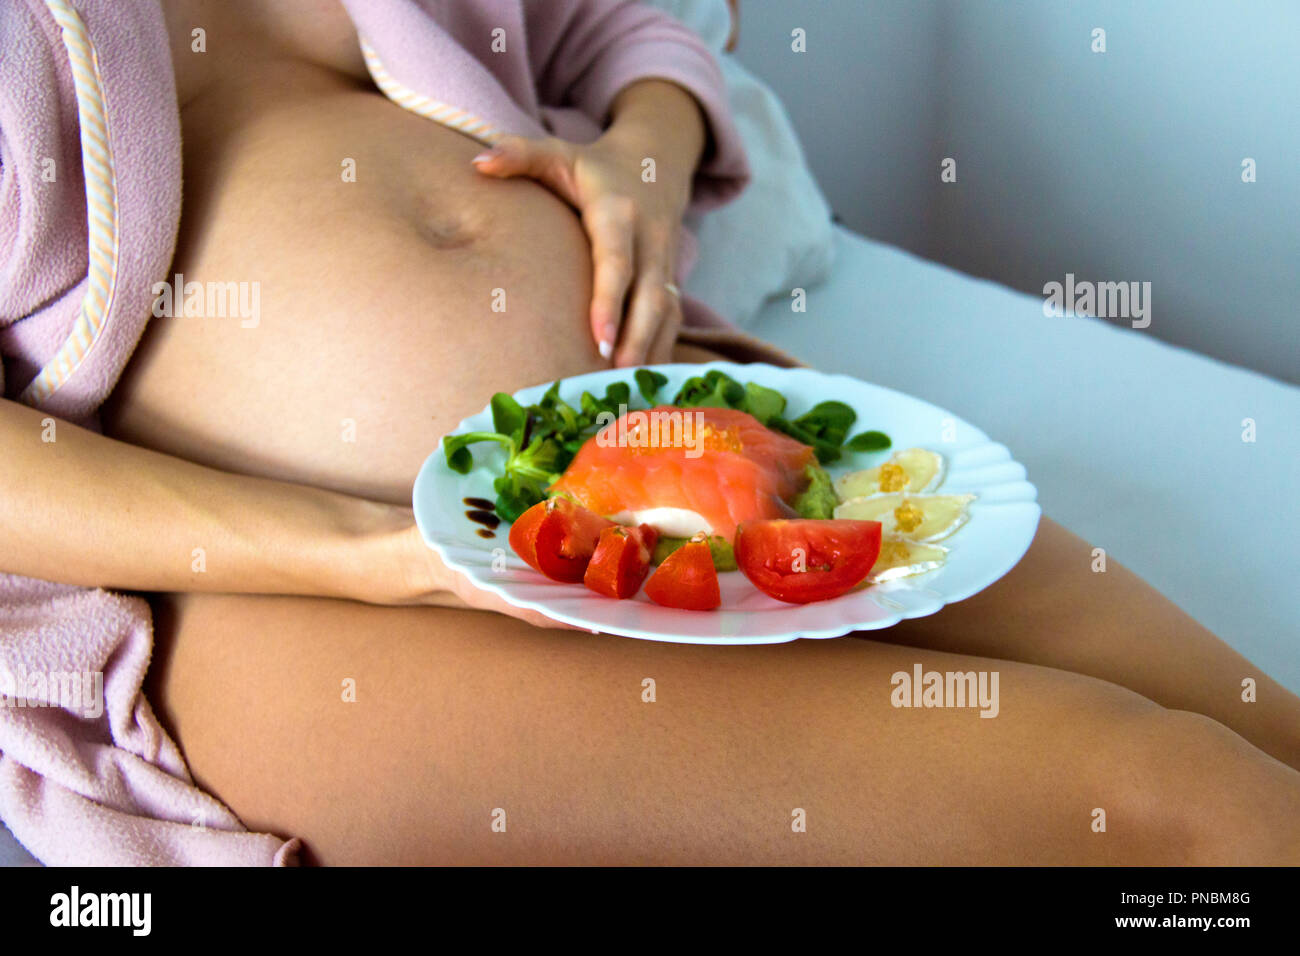 Piuttosto giovane donna incinta dalla pancia posa sul letto e tenendo una piastra con un sano cibo nutriente, gli acidi grassi omega 3 pasti deliziosi ingredienti Foto Stock